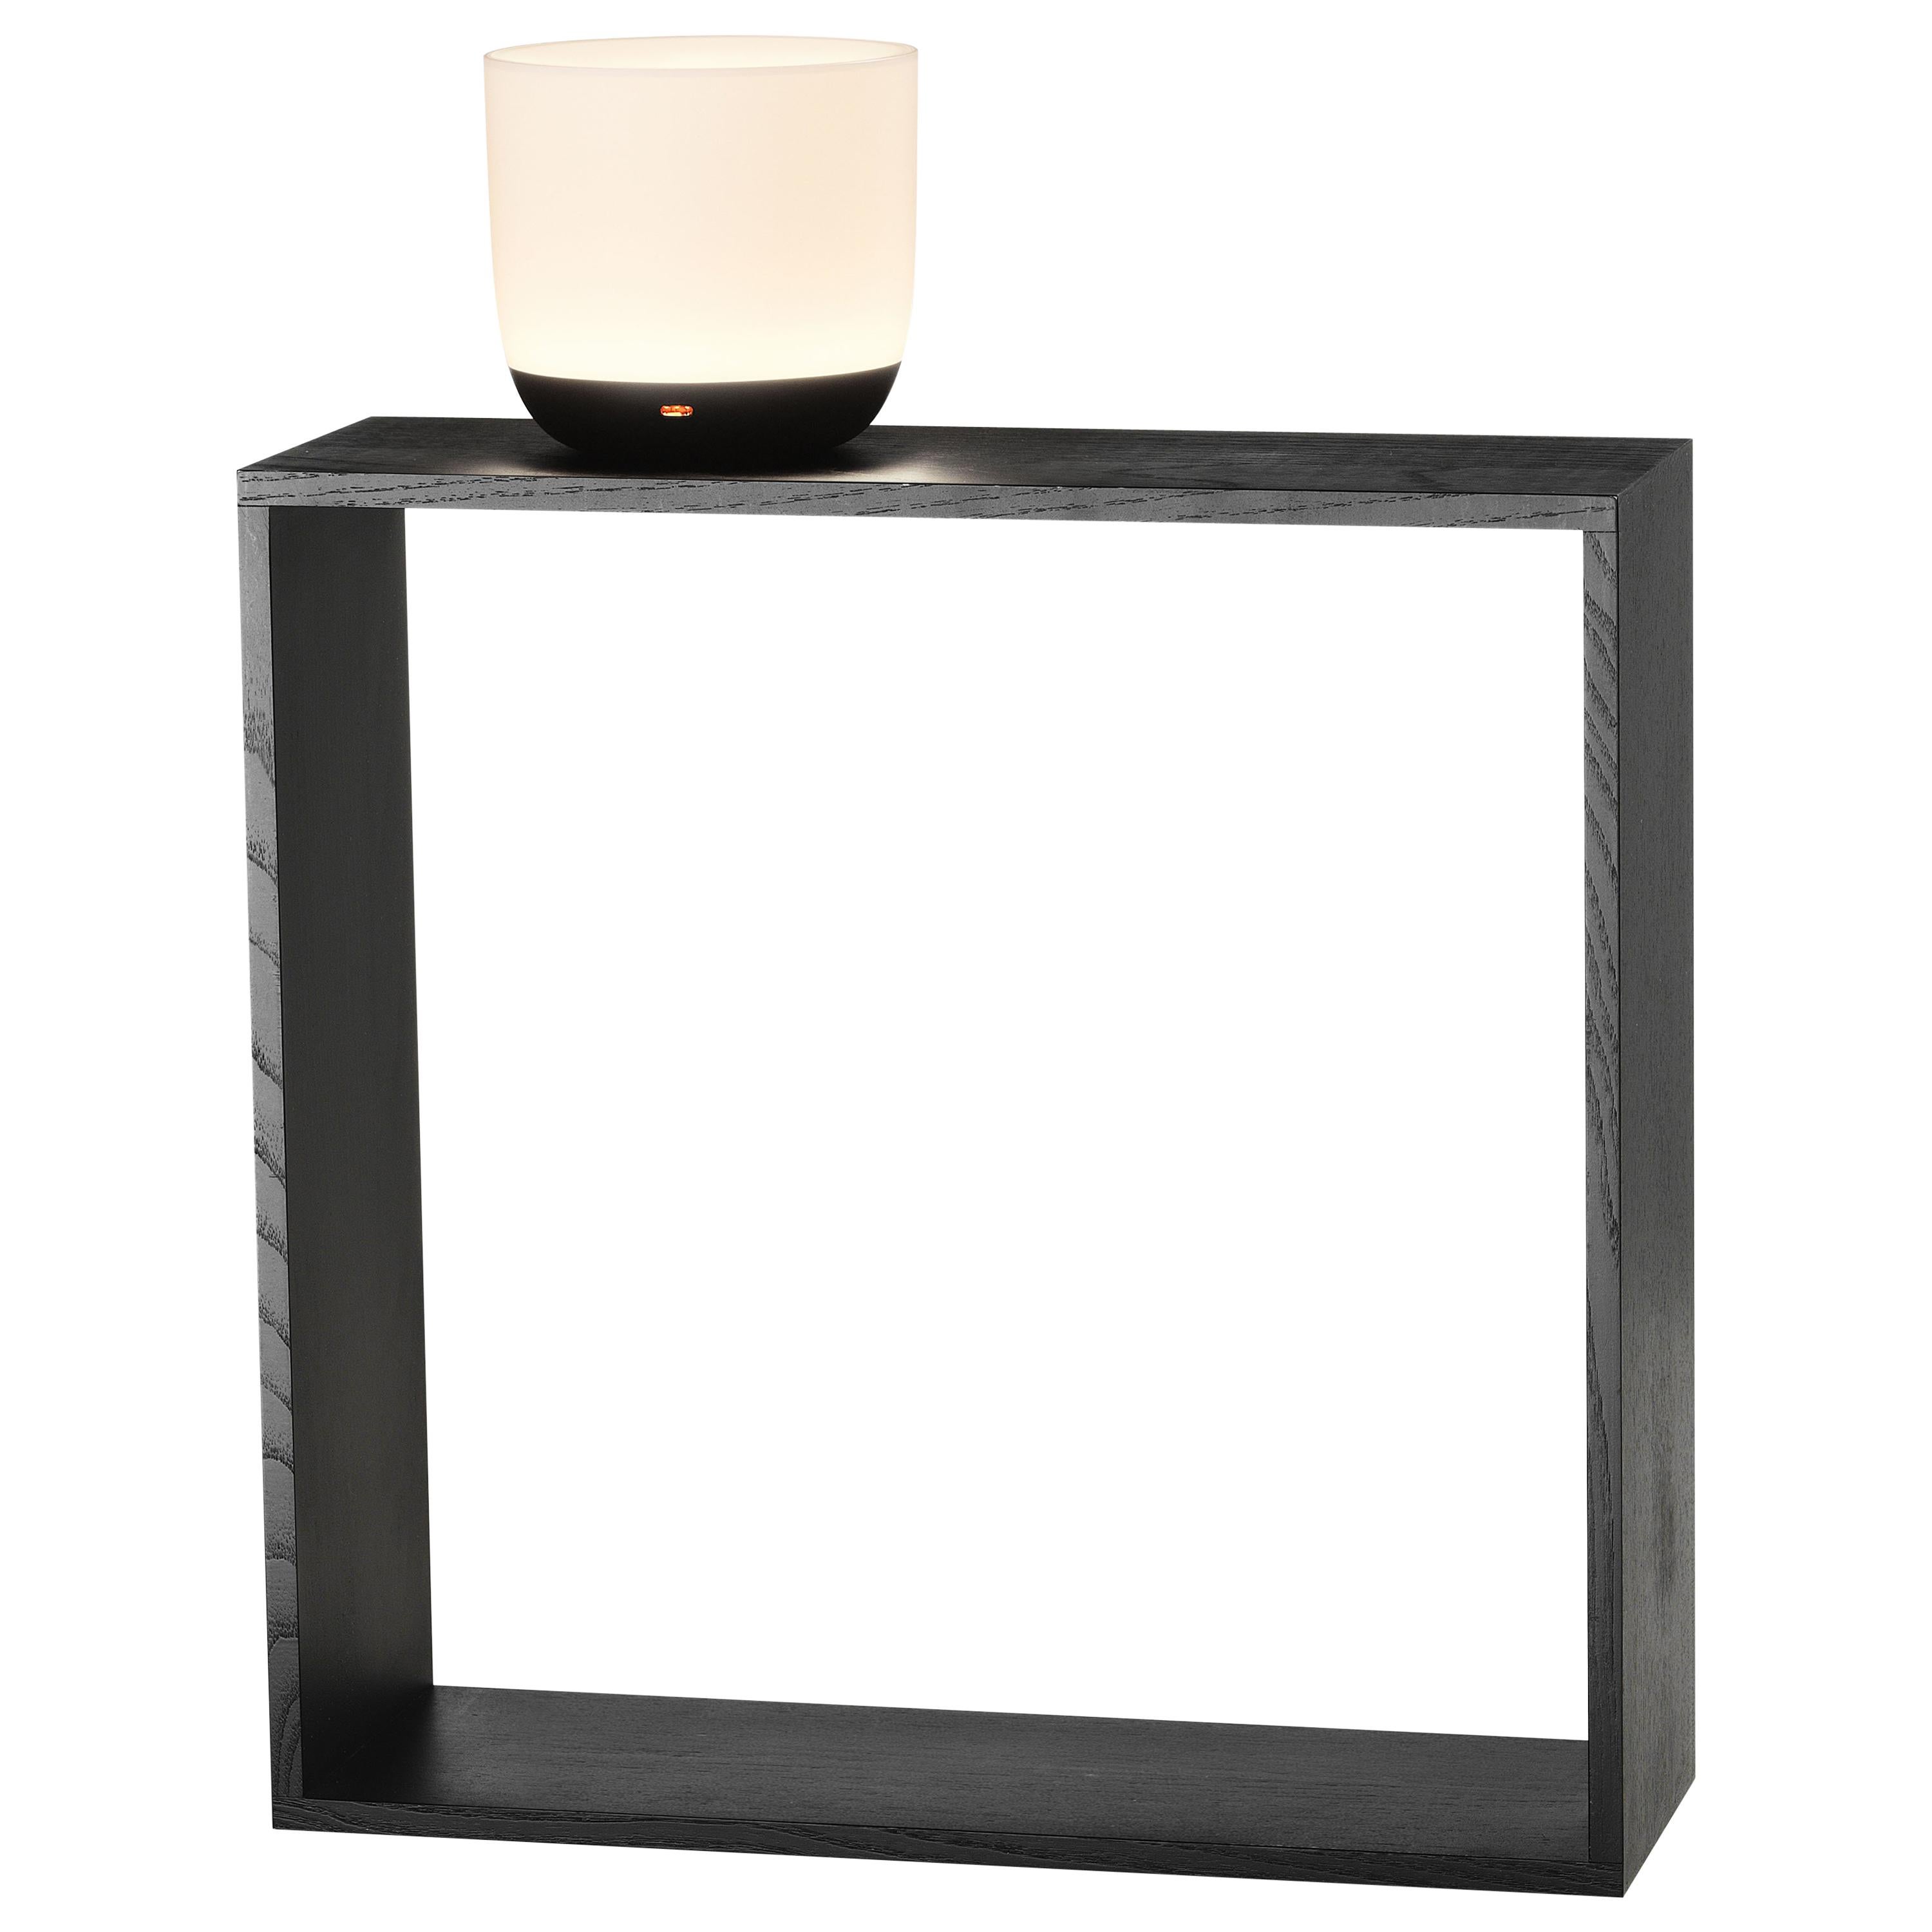 Flos Gaku Wireless Table Lamp in Black by Nendo